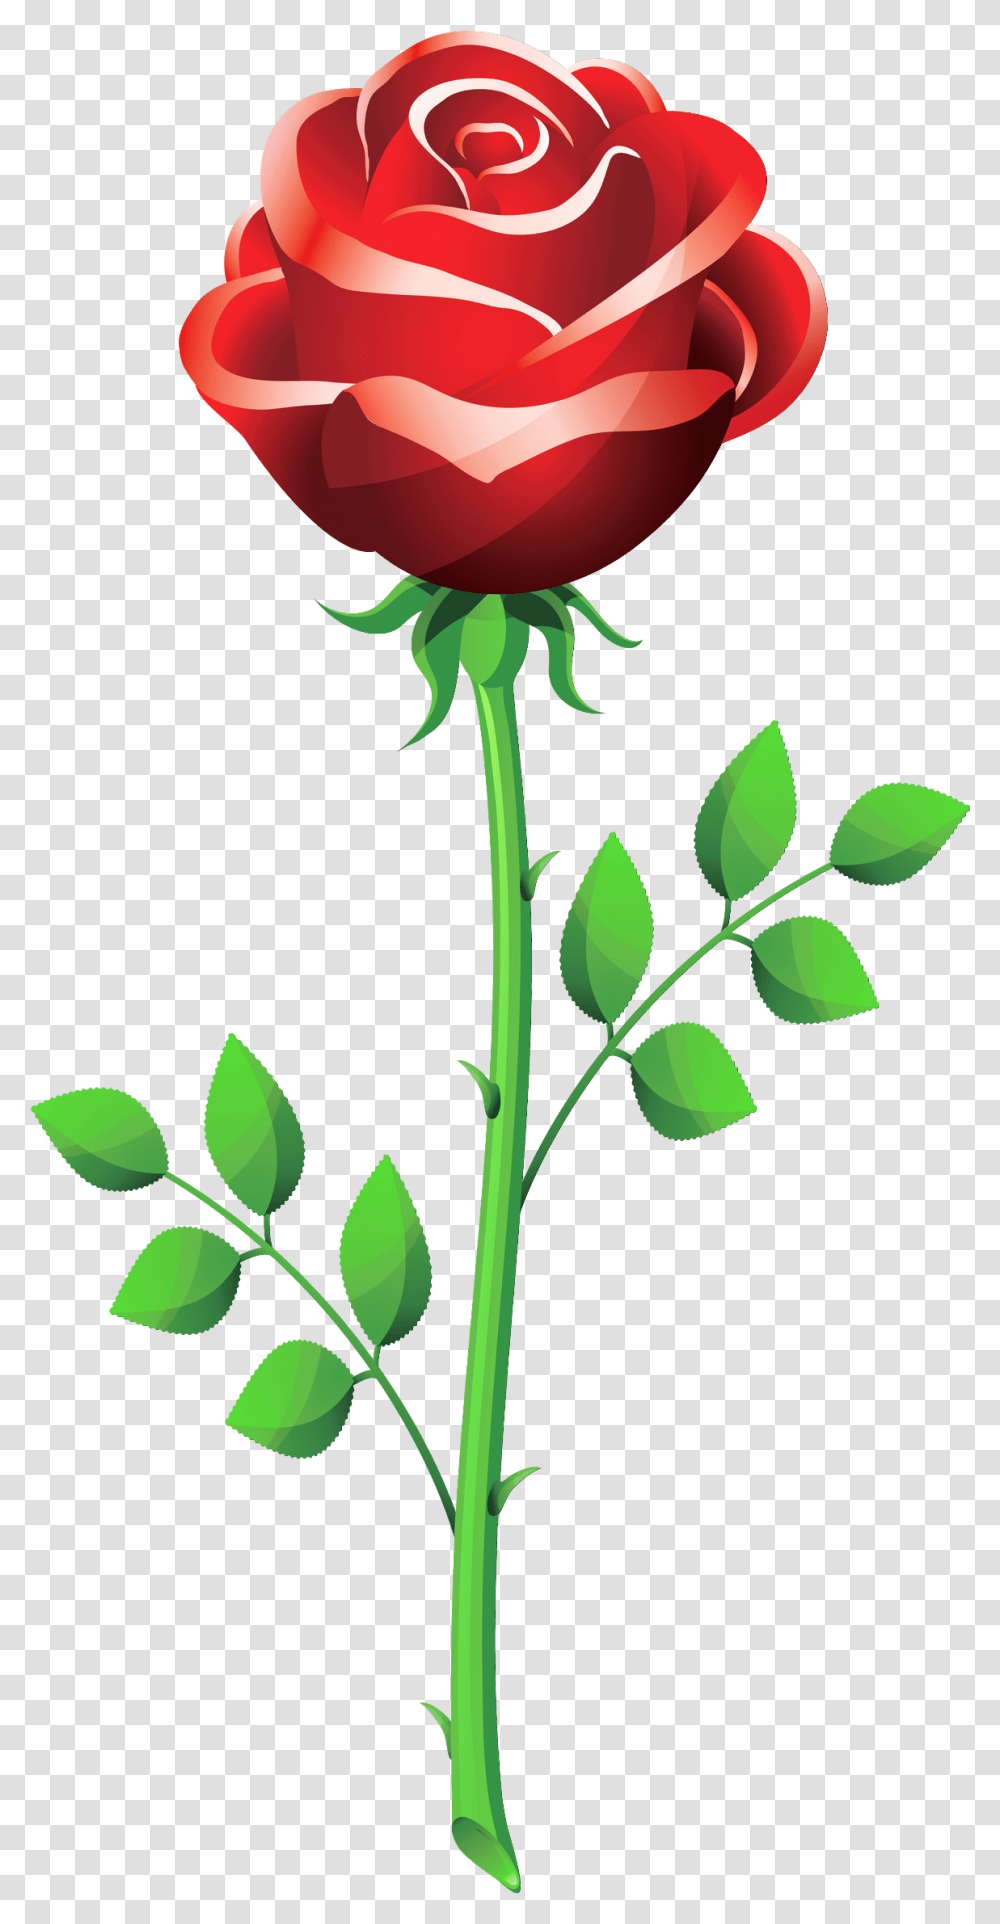 Roses Red Rose Clip Art Vectors Download Free Vector Rose Flower Vector, Plant, Blossom, Leaf Transparent Png